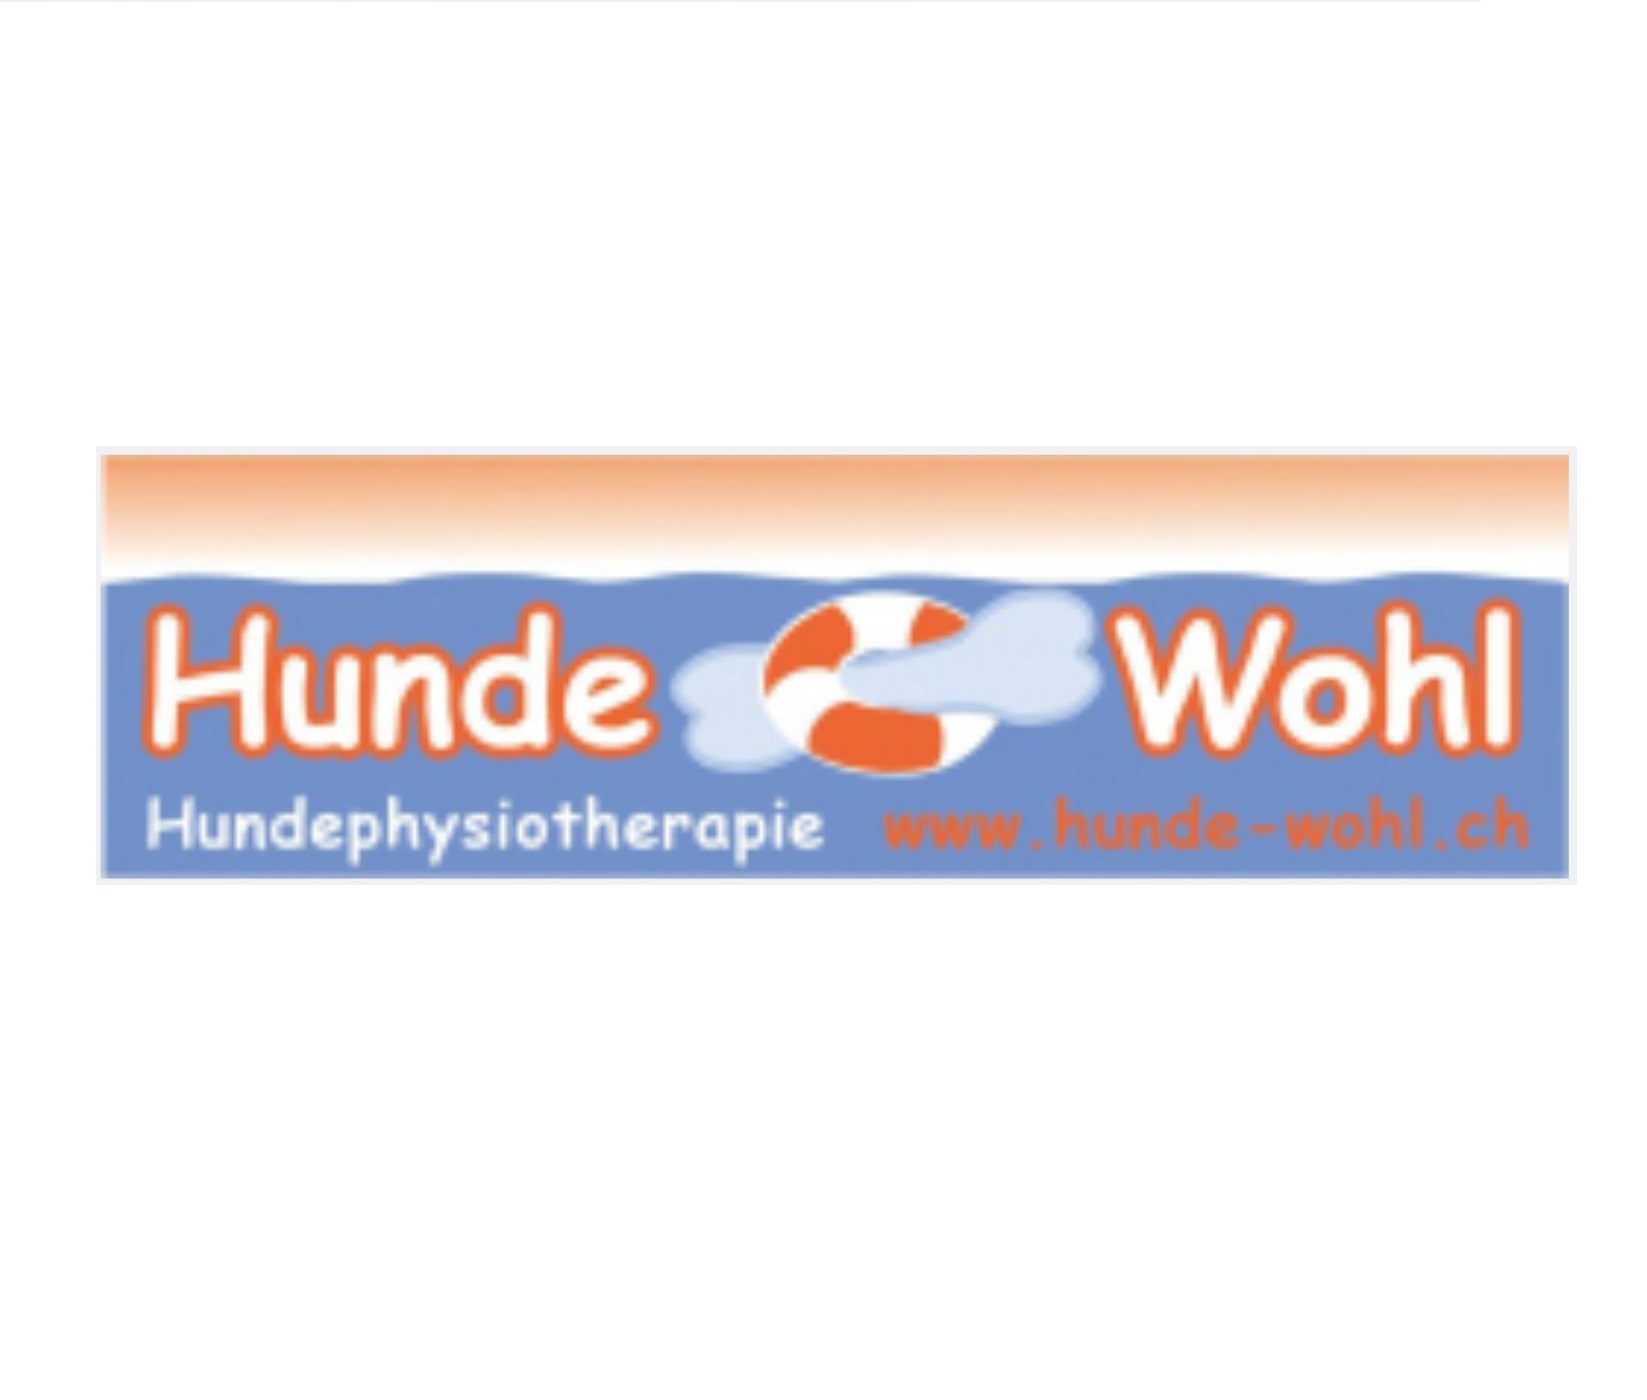 HundeWohl_Logo